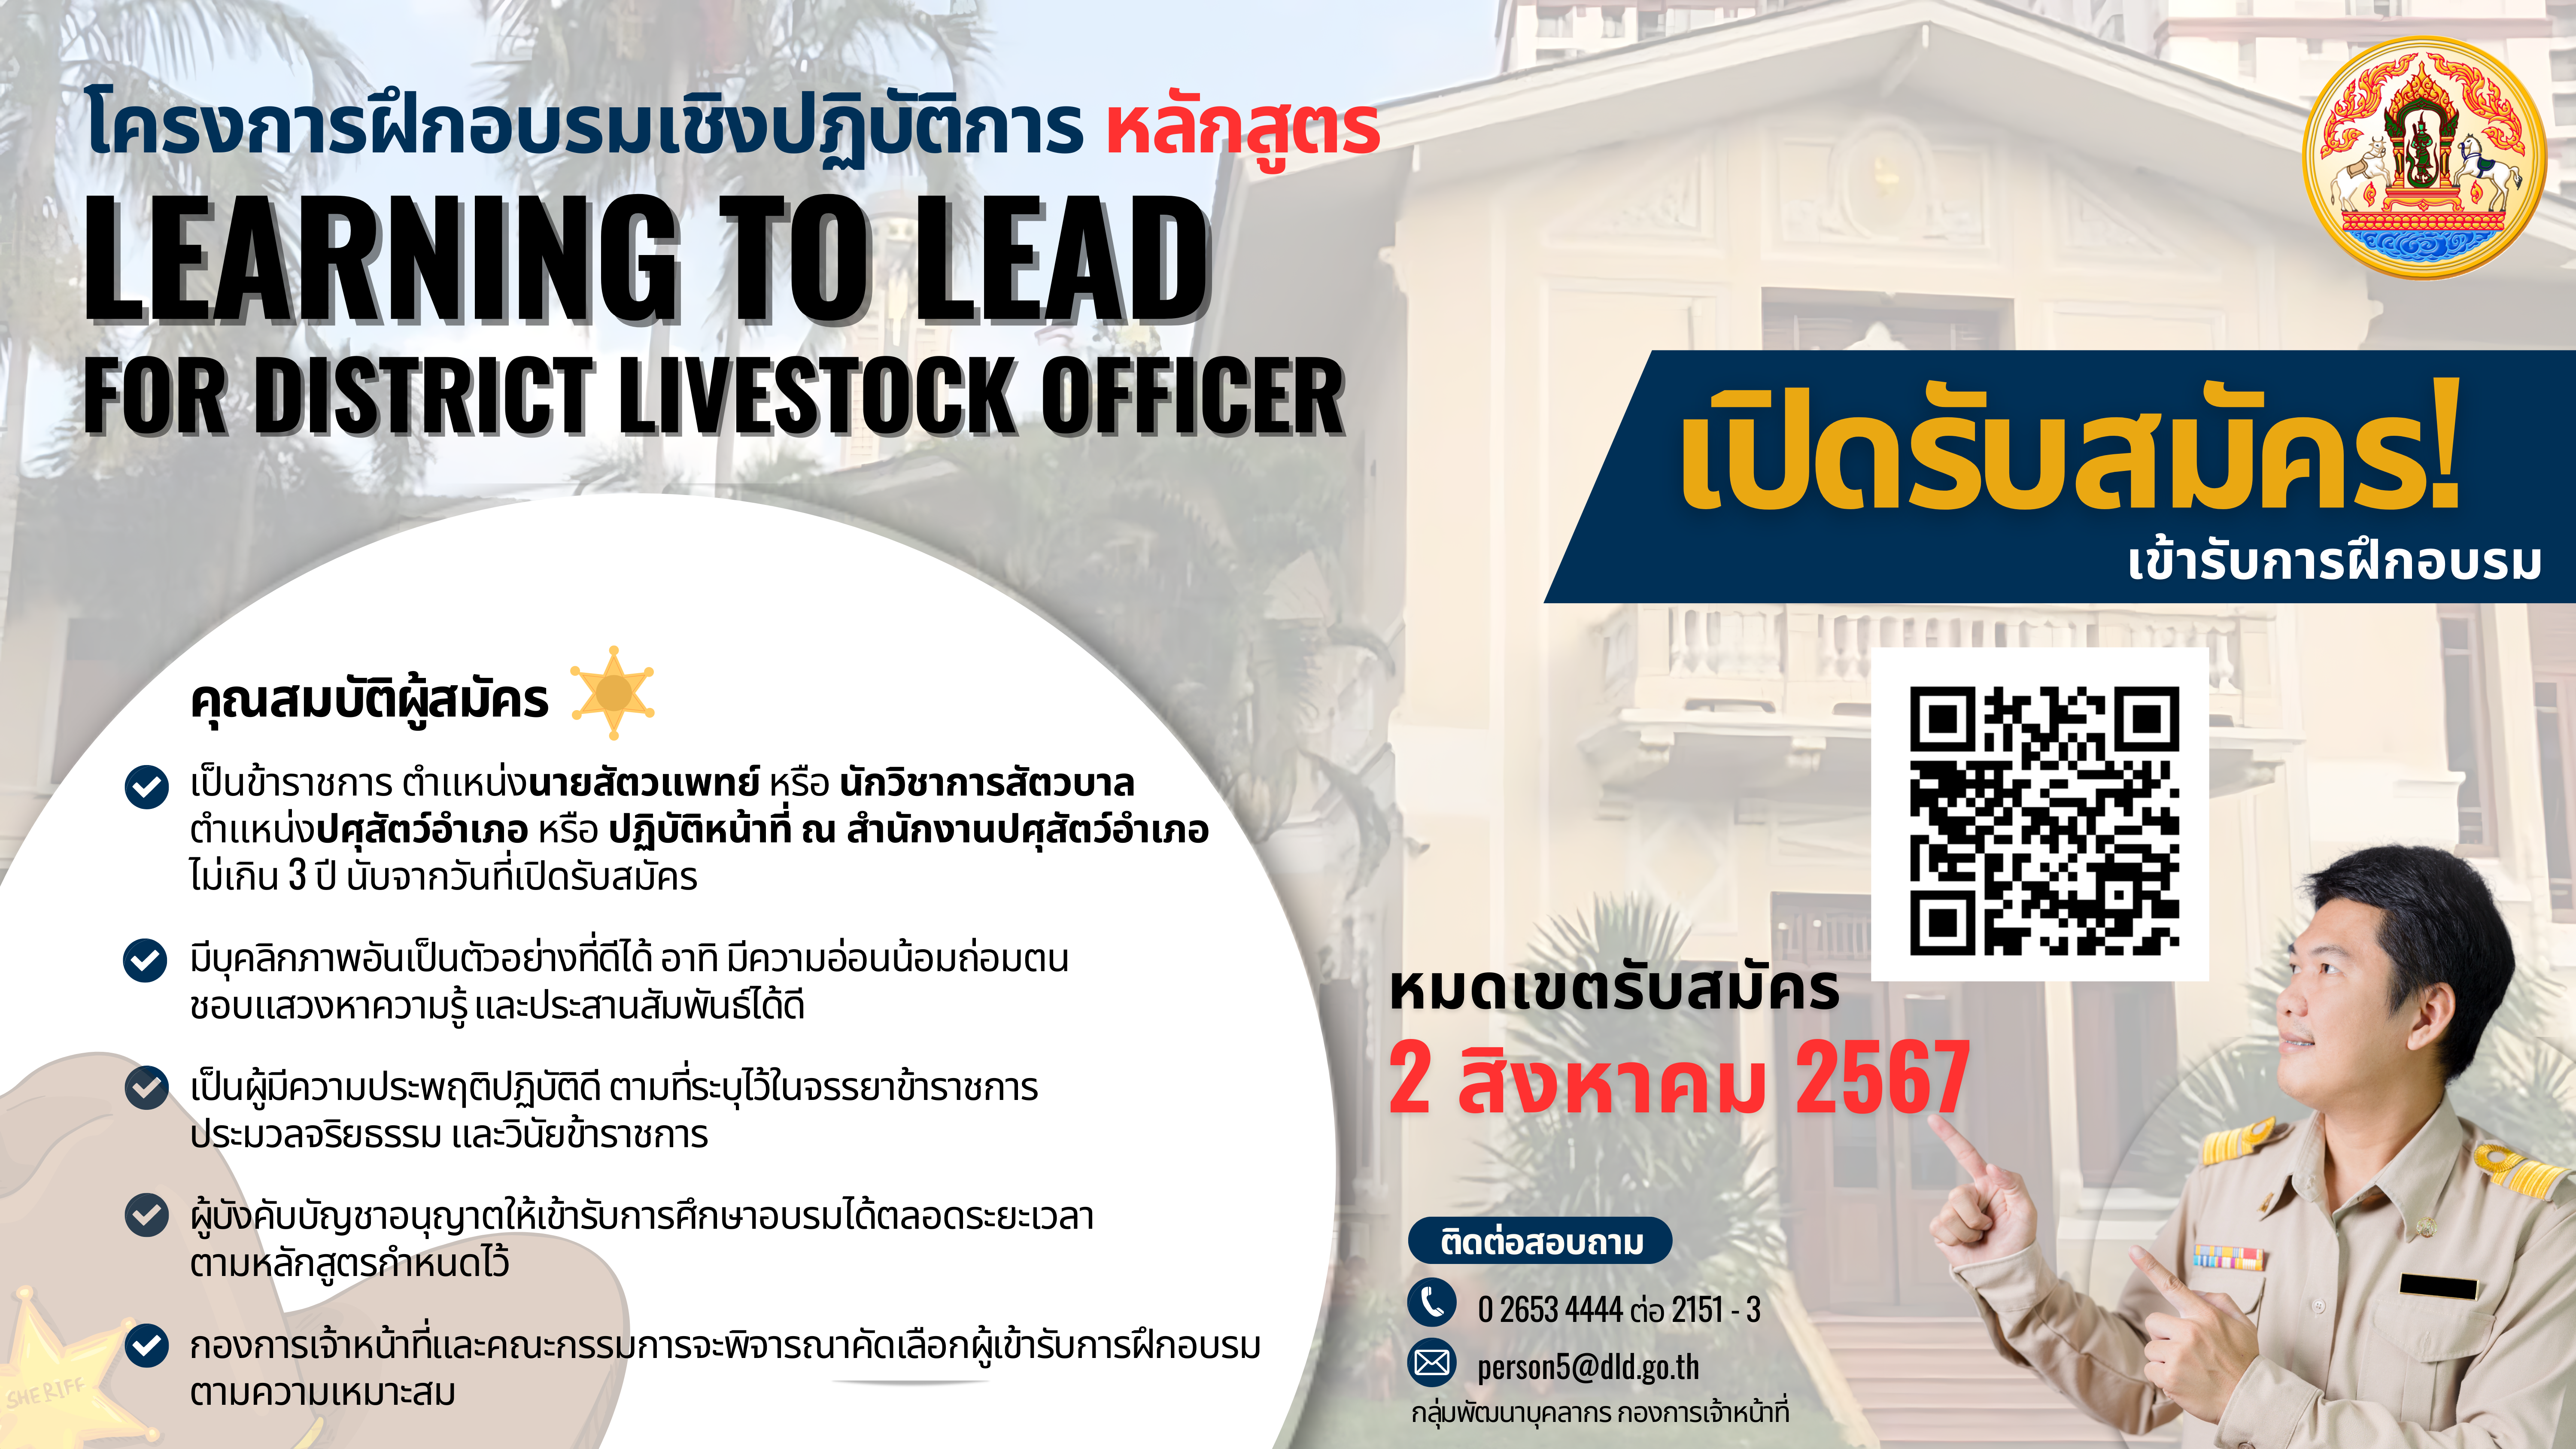 ขอเชิญสมัครเข้ารับการคัดเลือก เพื่อเข้าร่วมโครงการอบรมเชิงปฏิบัติการ หลักสูตร Learning to Lead for the District Livestock Officer ปีงบประมาณ พ.ศ. 2567